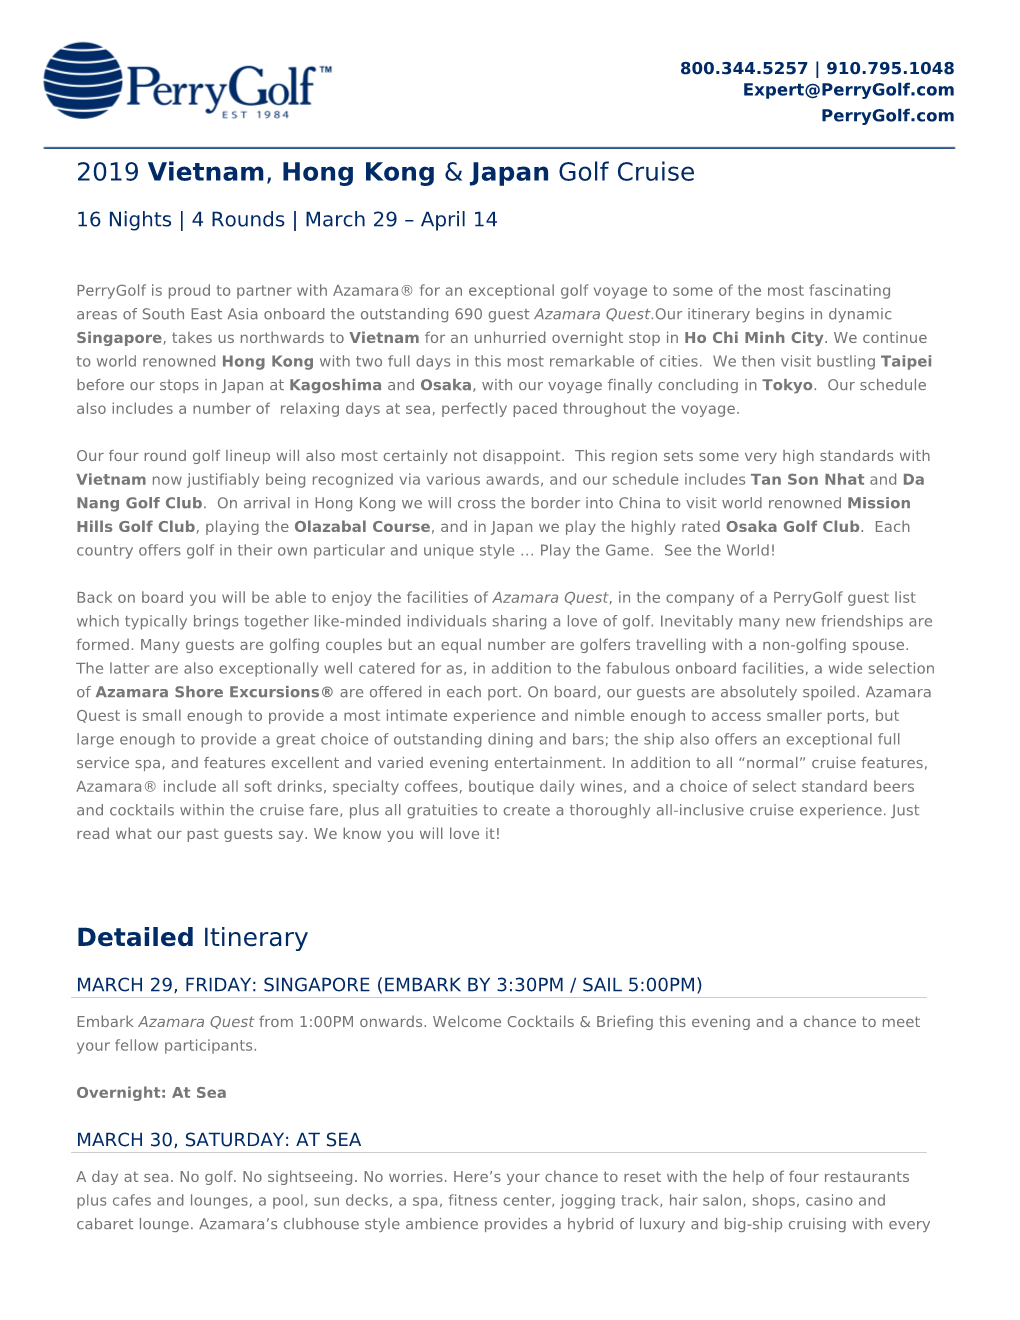 2019 Vietnam, Hong Kong & Japan Golf Cruise Detailed Itinerary